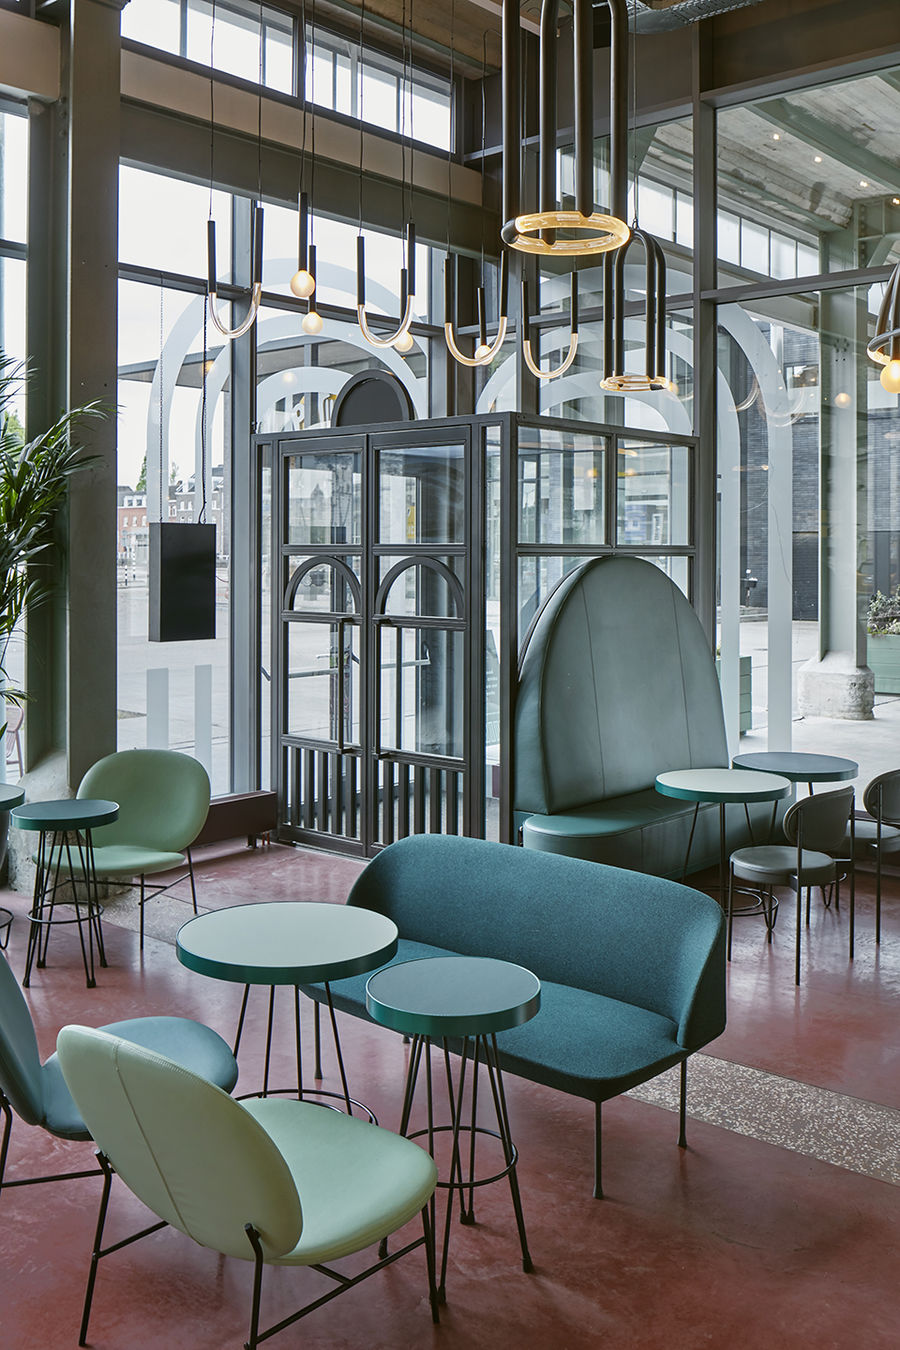 The Commons餐厅和酒吧，荷兰 / Studio Modijefsky